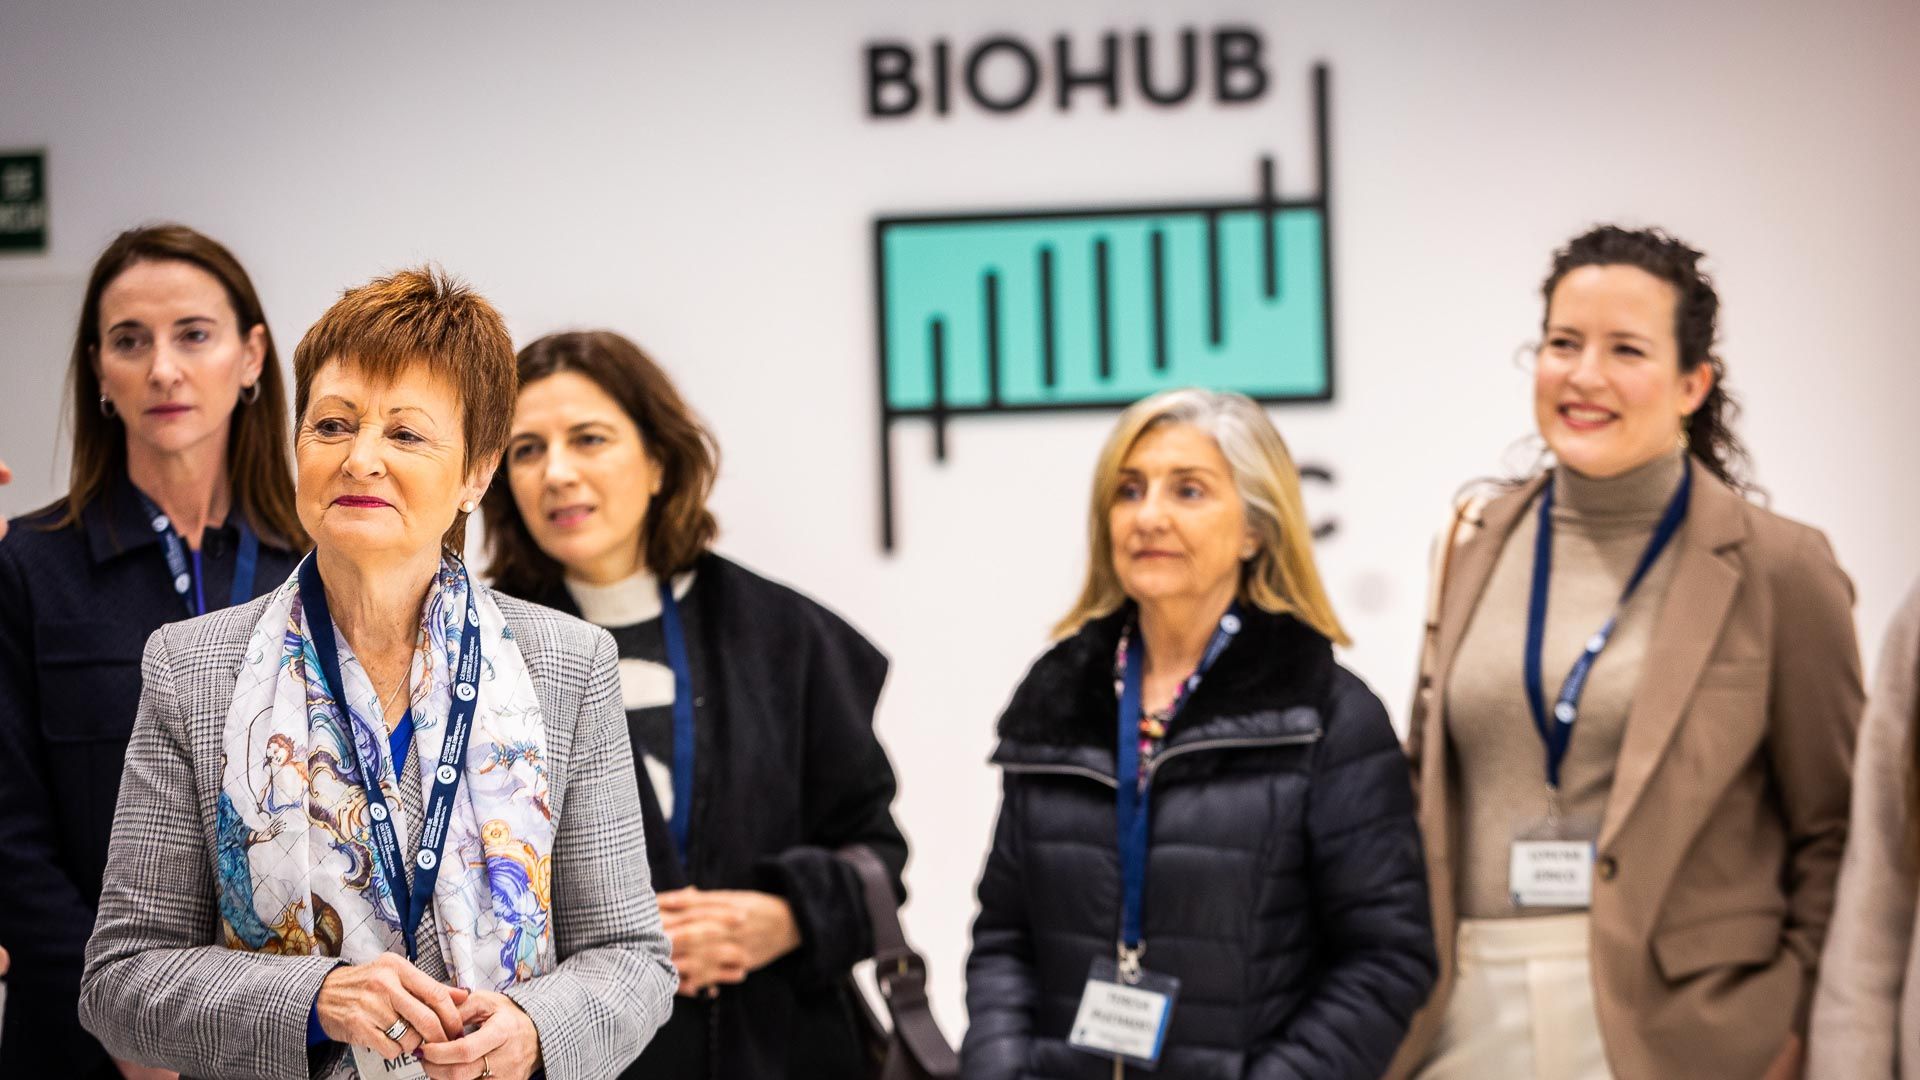 La UV organiza un encuentro para científicas y emprendedoras en BioHub Valencia